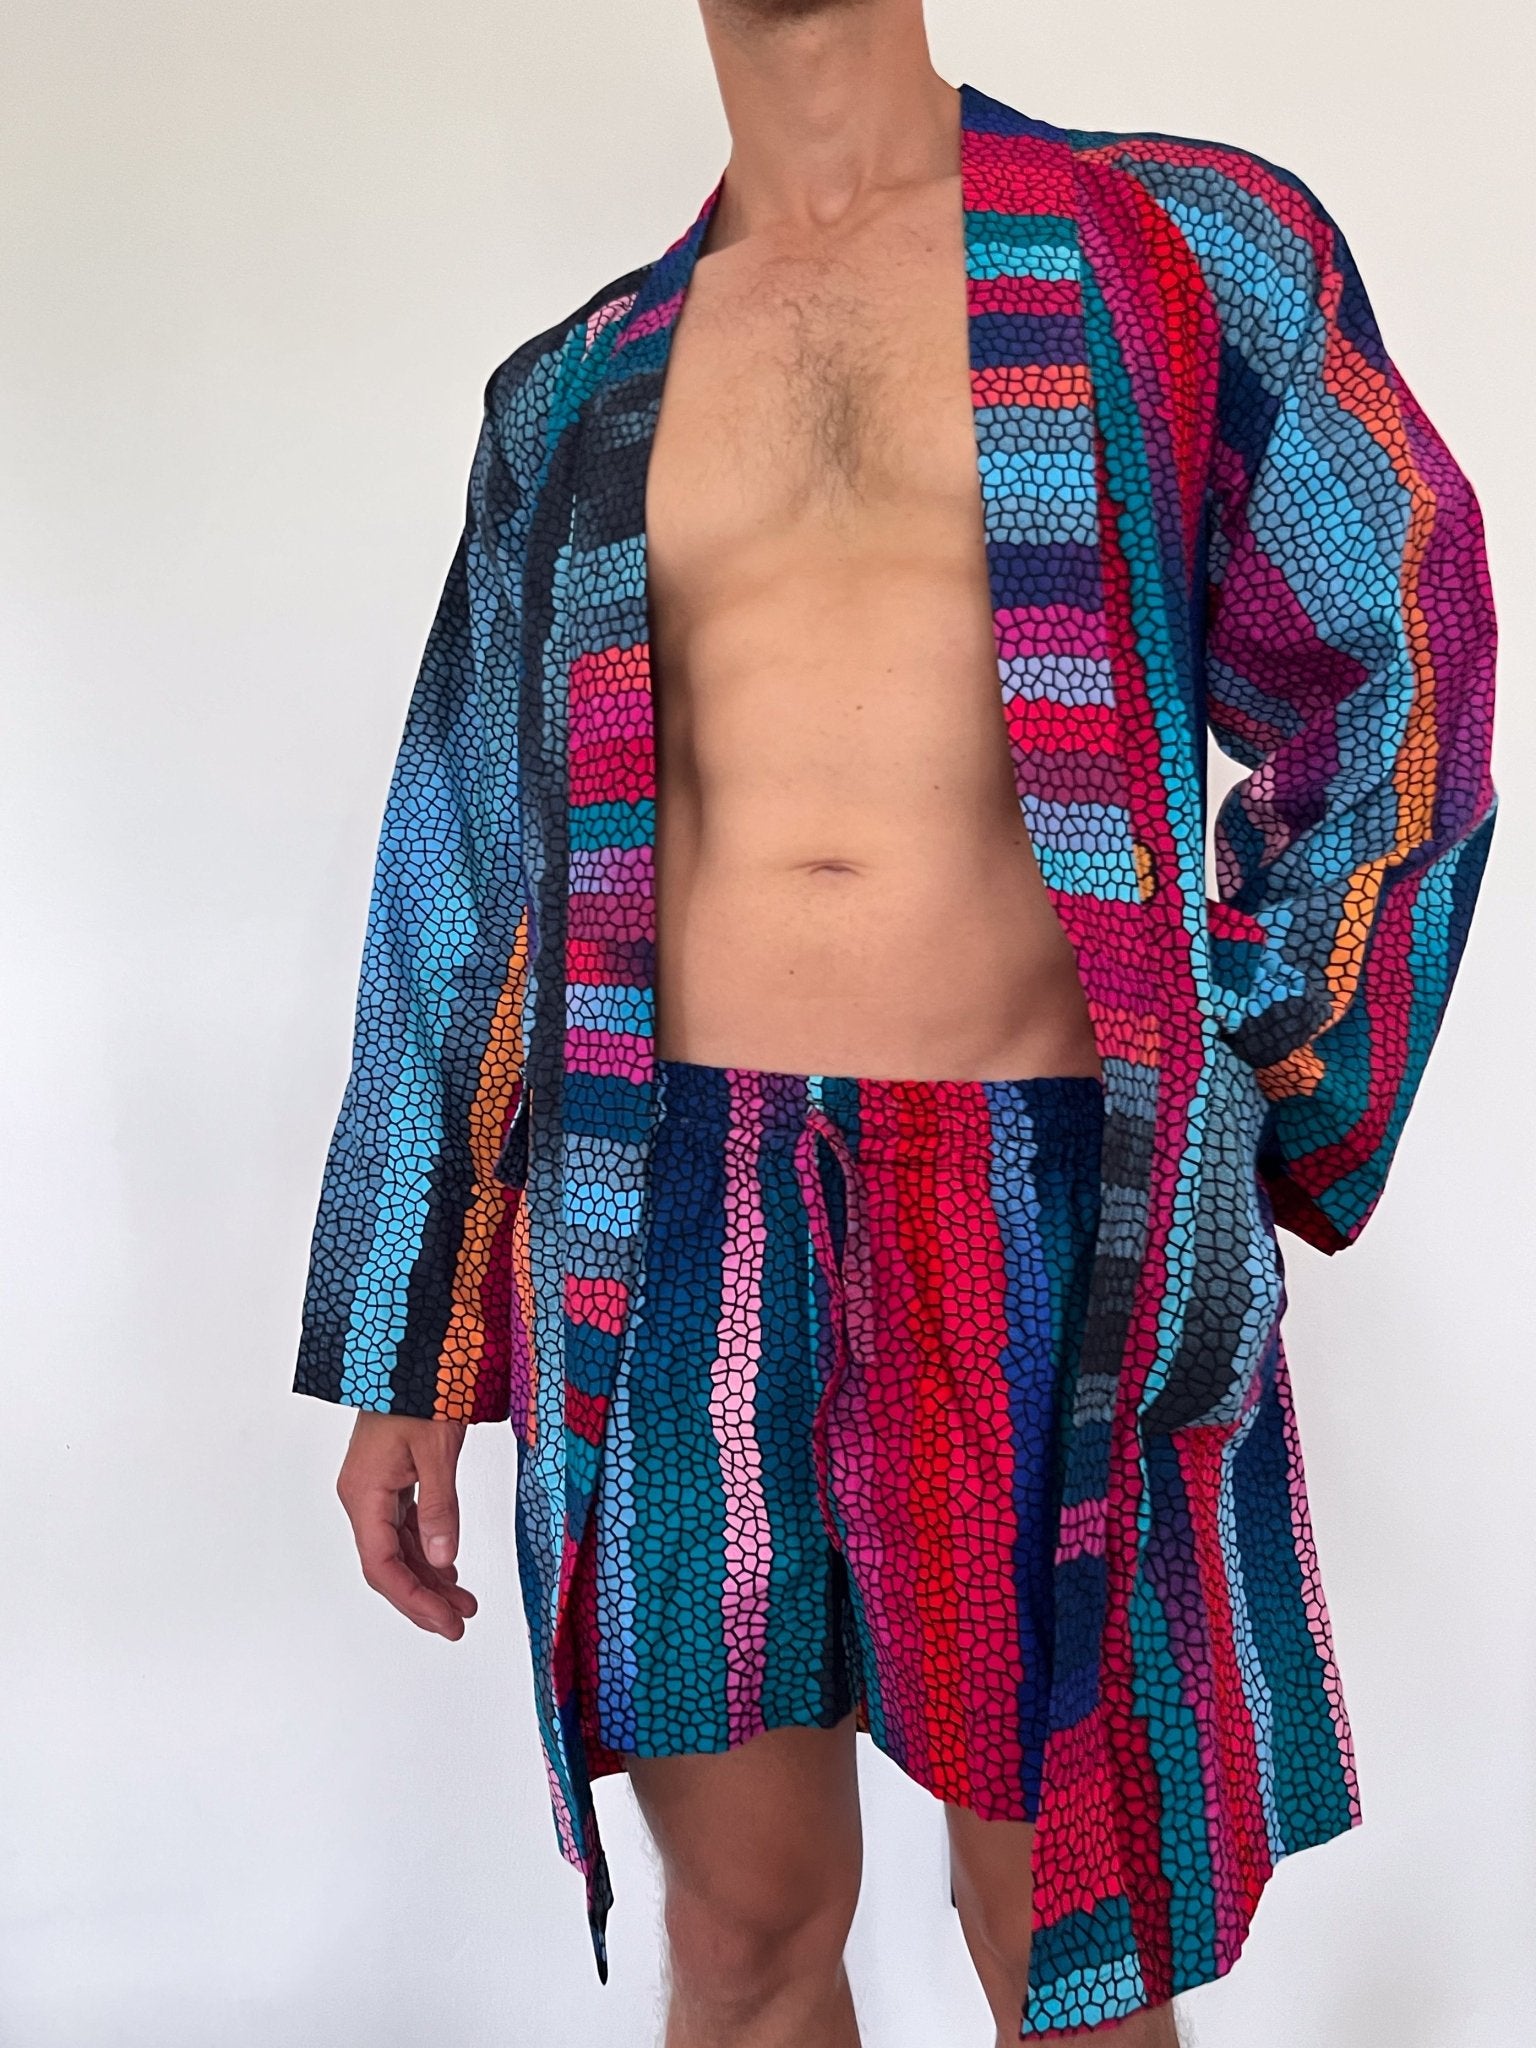 Party-Kimono ‚Rangi‘ - mikono.africa Jacken aus Kenia bunte Bomberjacke Partyjacke faire sozial nachhaltig designed in Kenia